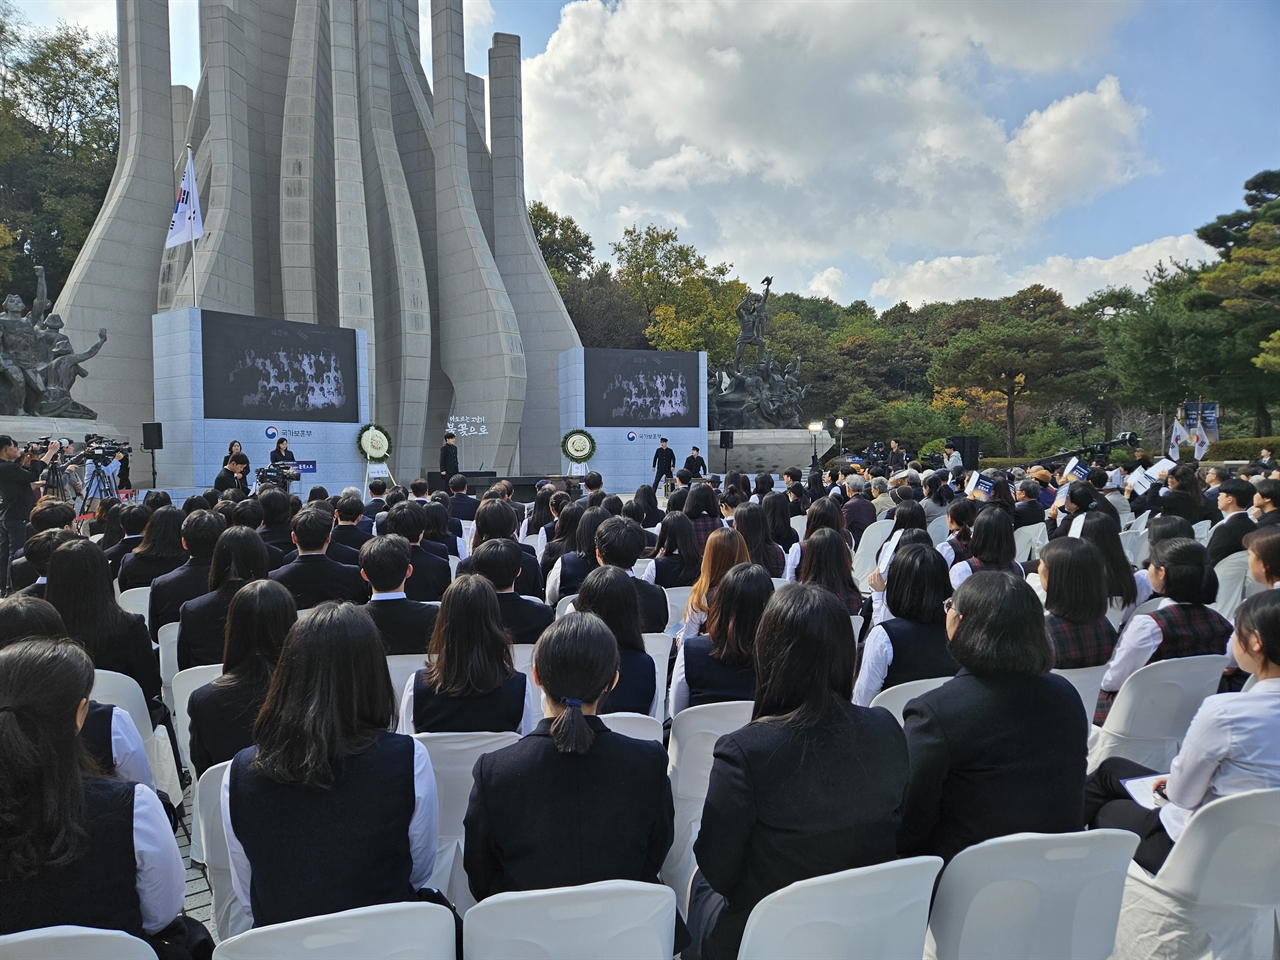 국가보훈부는 3일 광주광역시 서구 화정동 학생독립운동기념탑에서 제94주년 학생독립운동 기념식을 열었다.